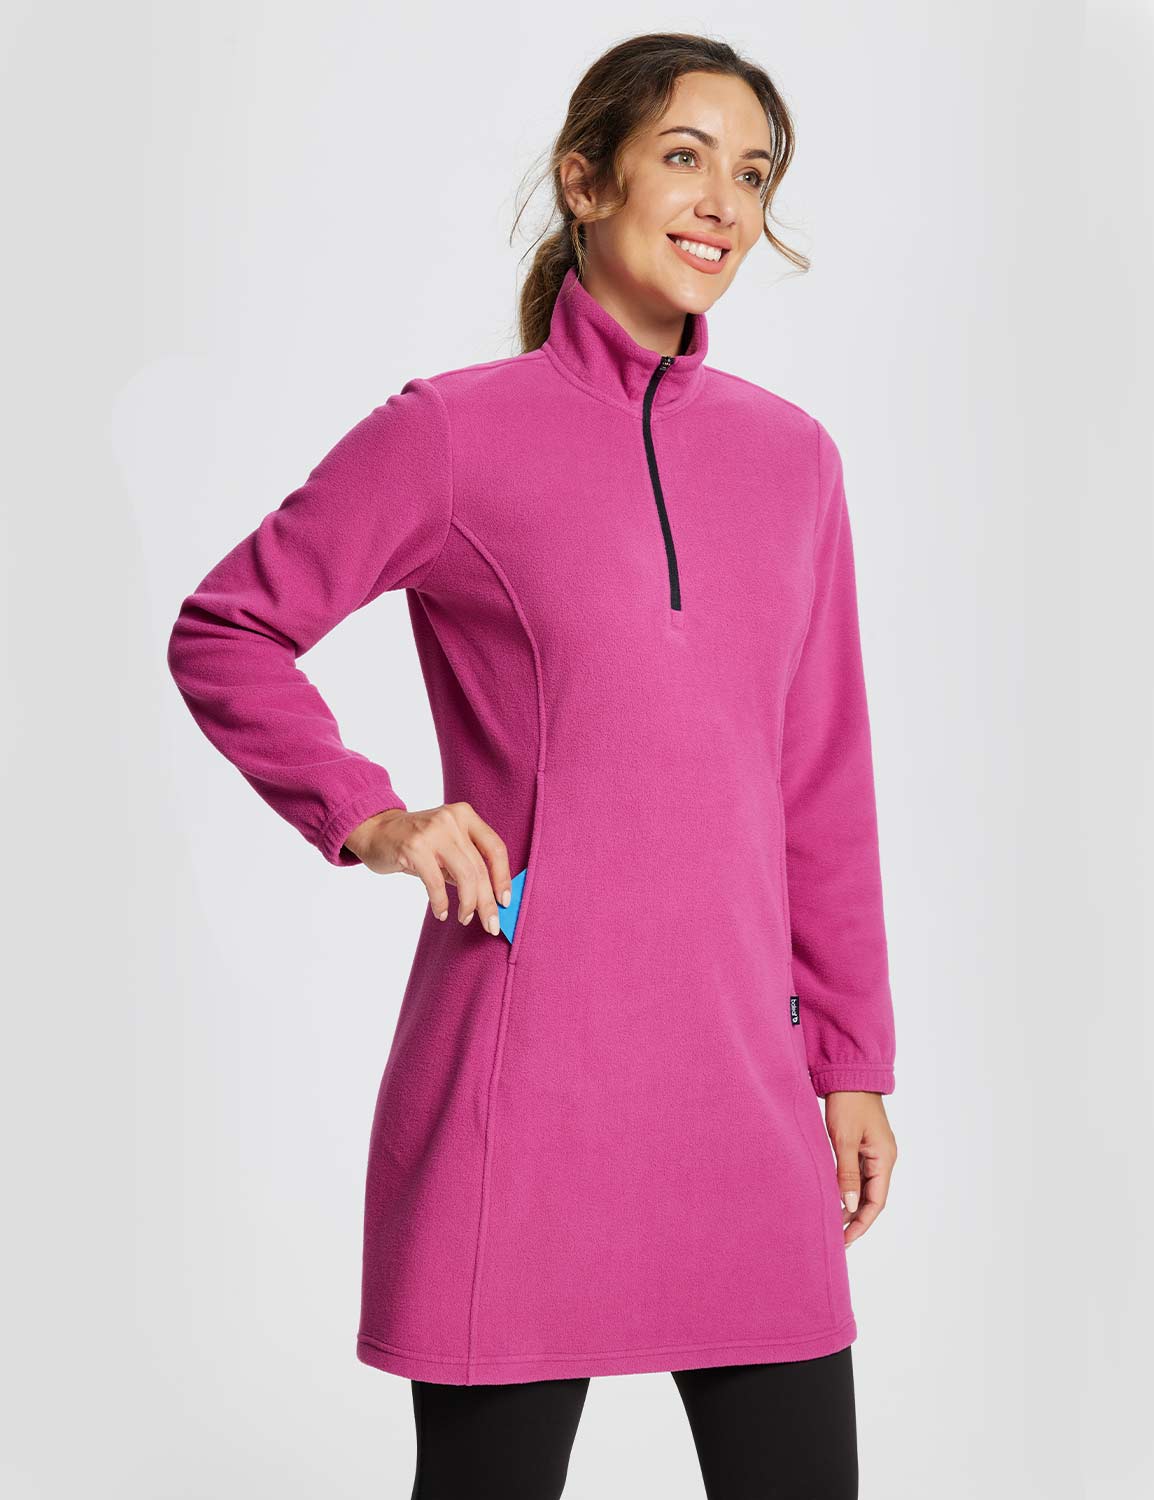 Baleaf Women's Long-Sleeve Quarter Zip Thermal Dress dga069 Violet Rose Side